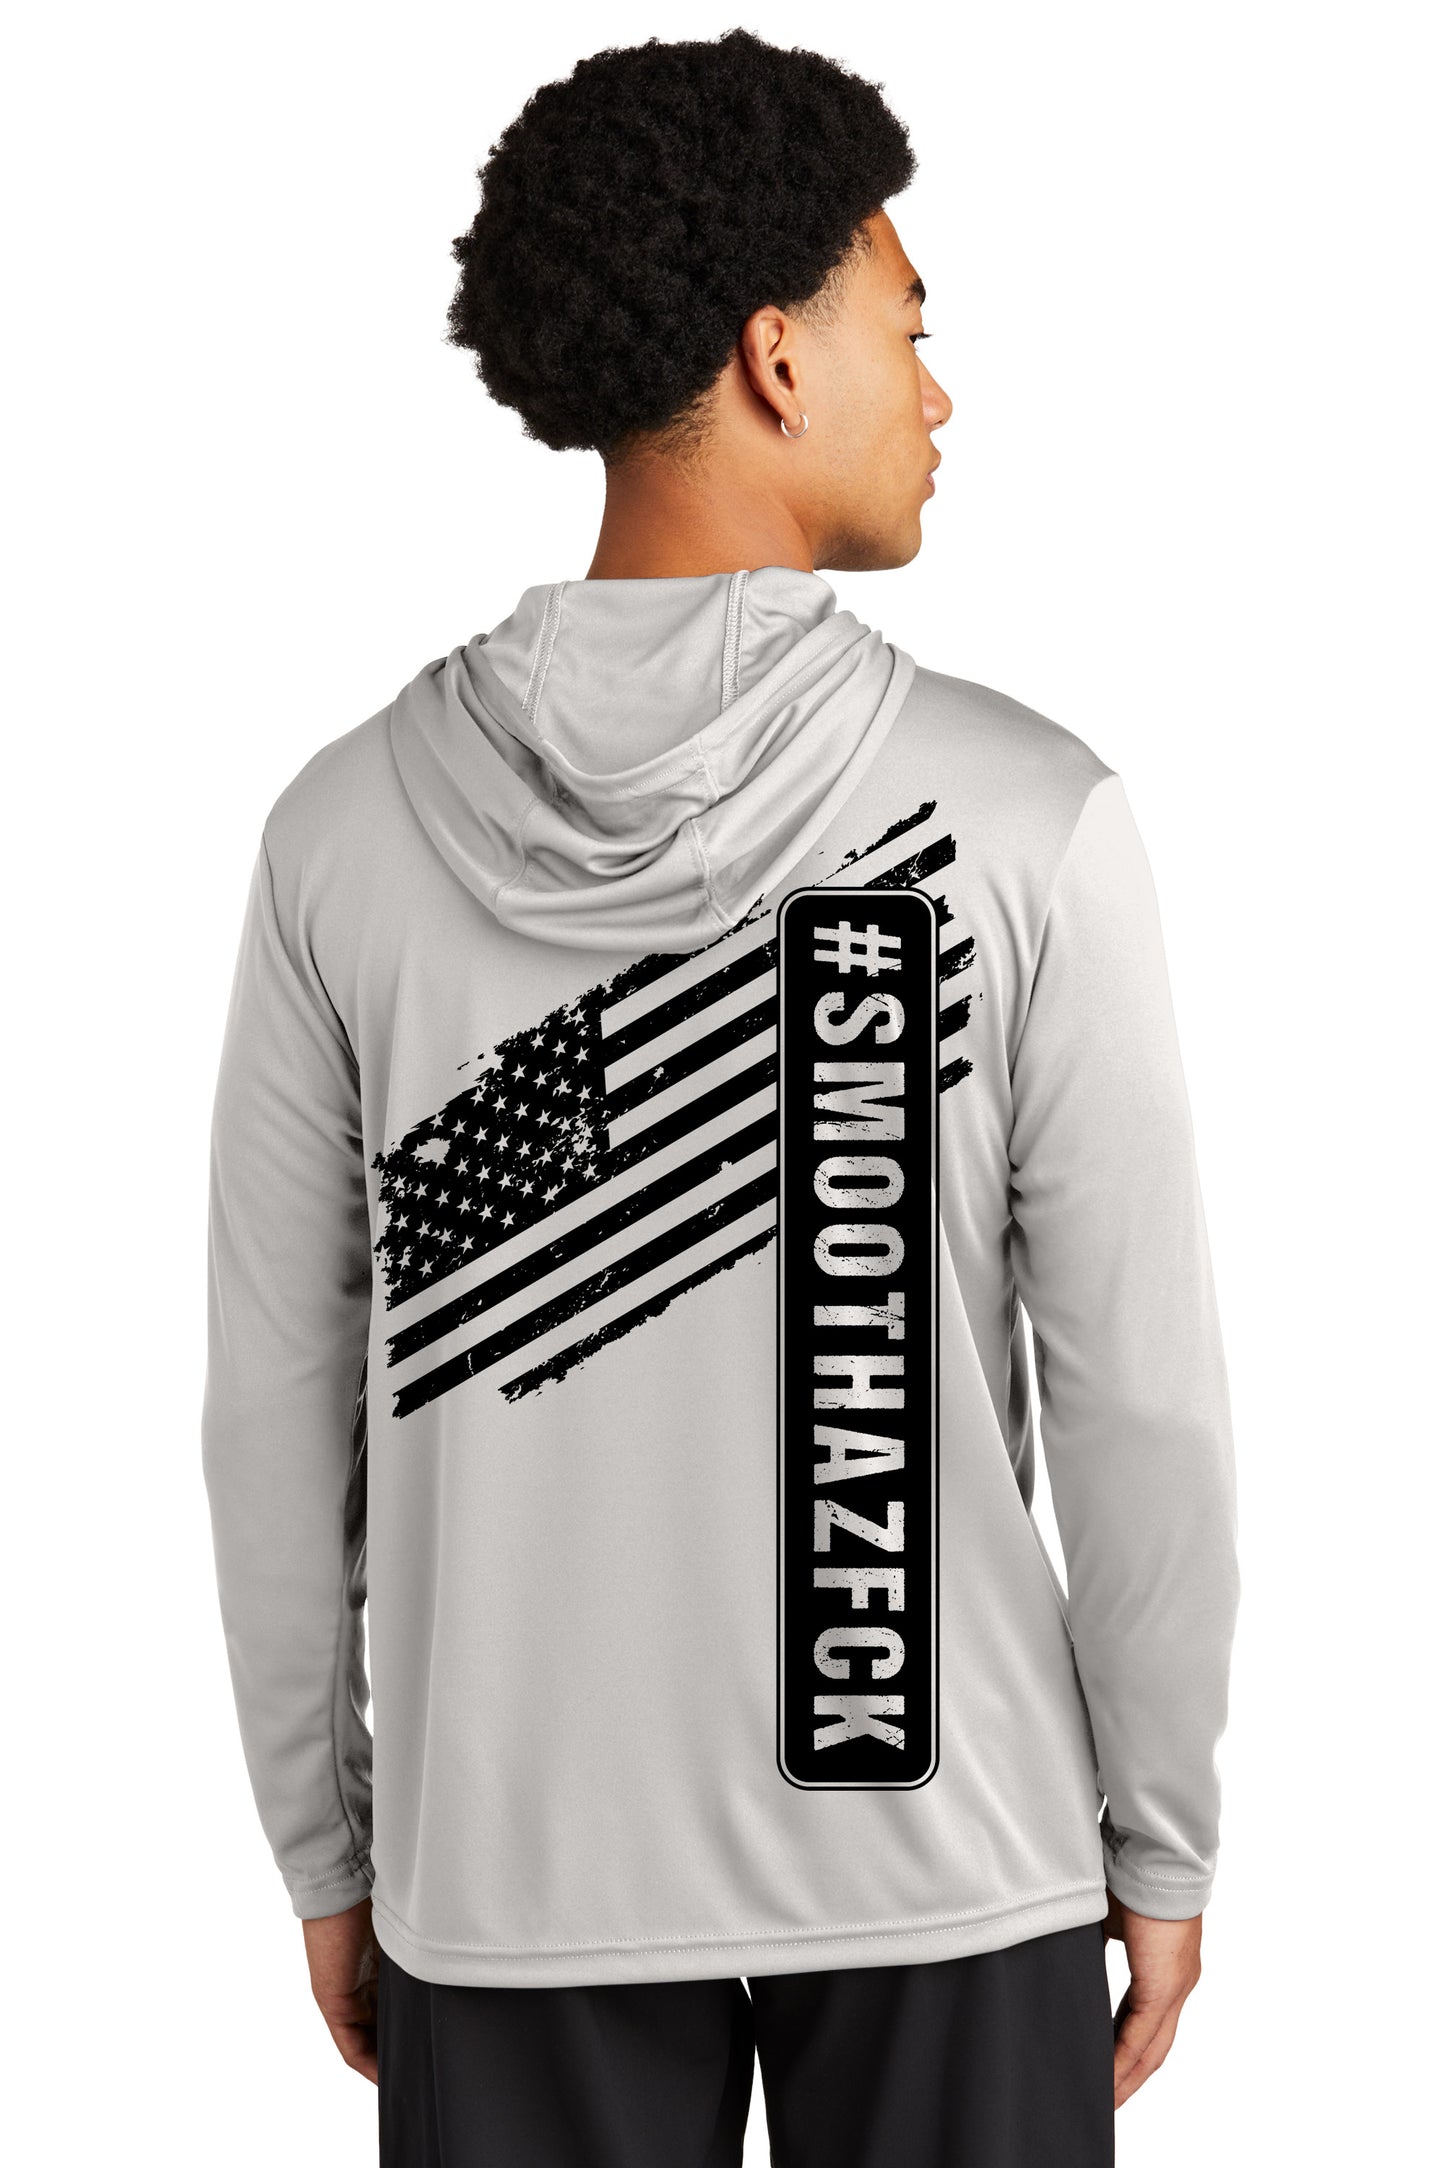 Unisex Hooded Sun Shirt Flag Design